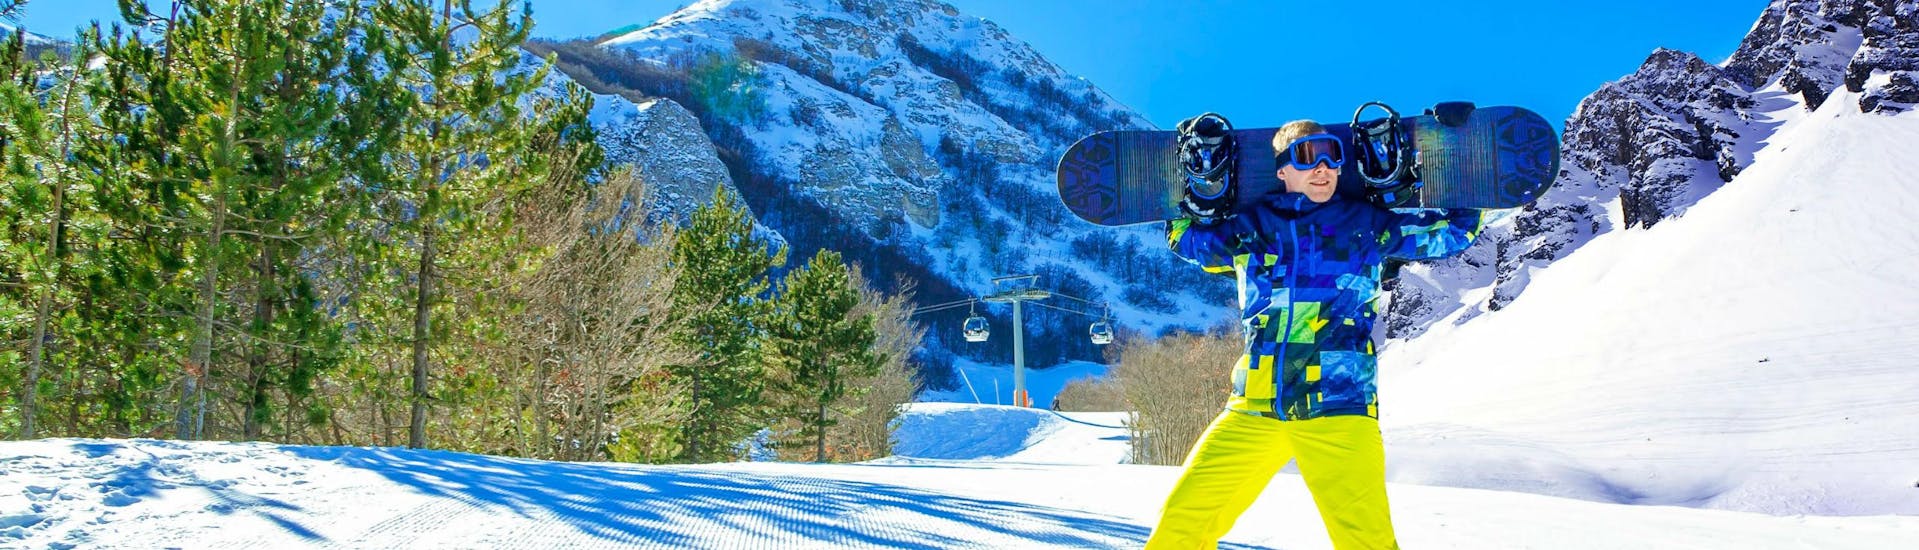 Uno snowboarder sta sorridendo alla fotocamera su una pista soleggiata del comprensorio sciistico di Ovindoli, dove è possibile scegliere tra un'ampia gamma di corsi di sci e snowboard offerti dalle scuole di sci locali.